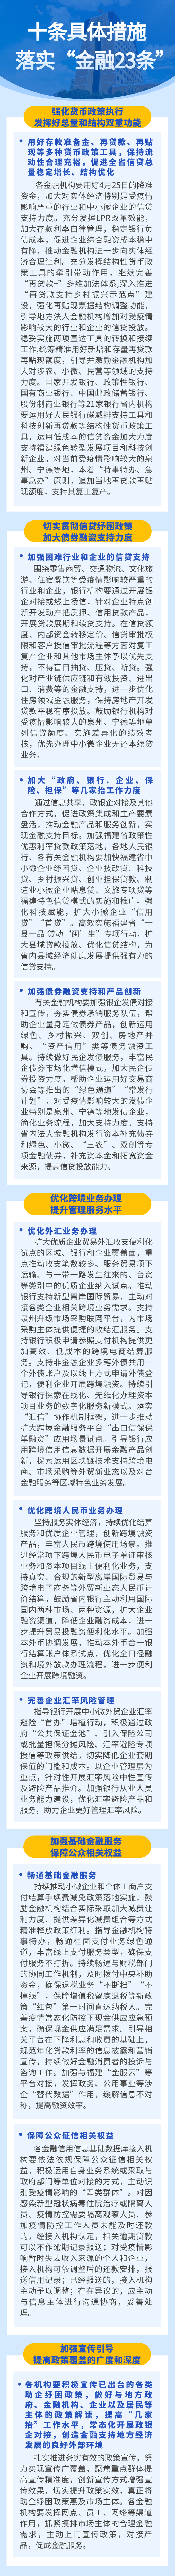 人民银行福州中心支行、外汇管理局福建省分局出台十条具体措施落实“金融23条”